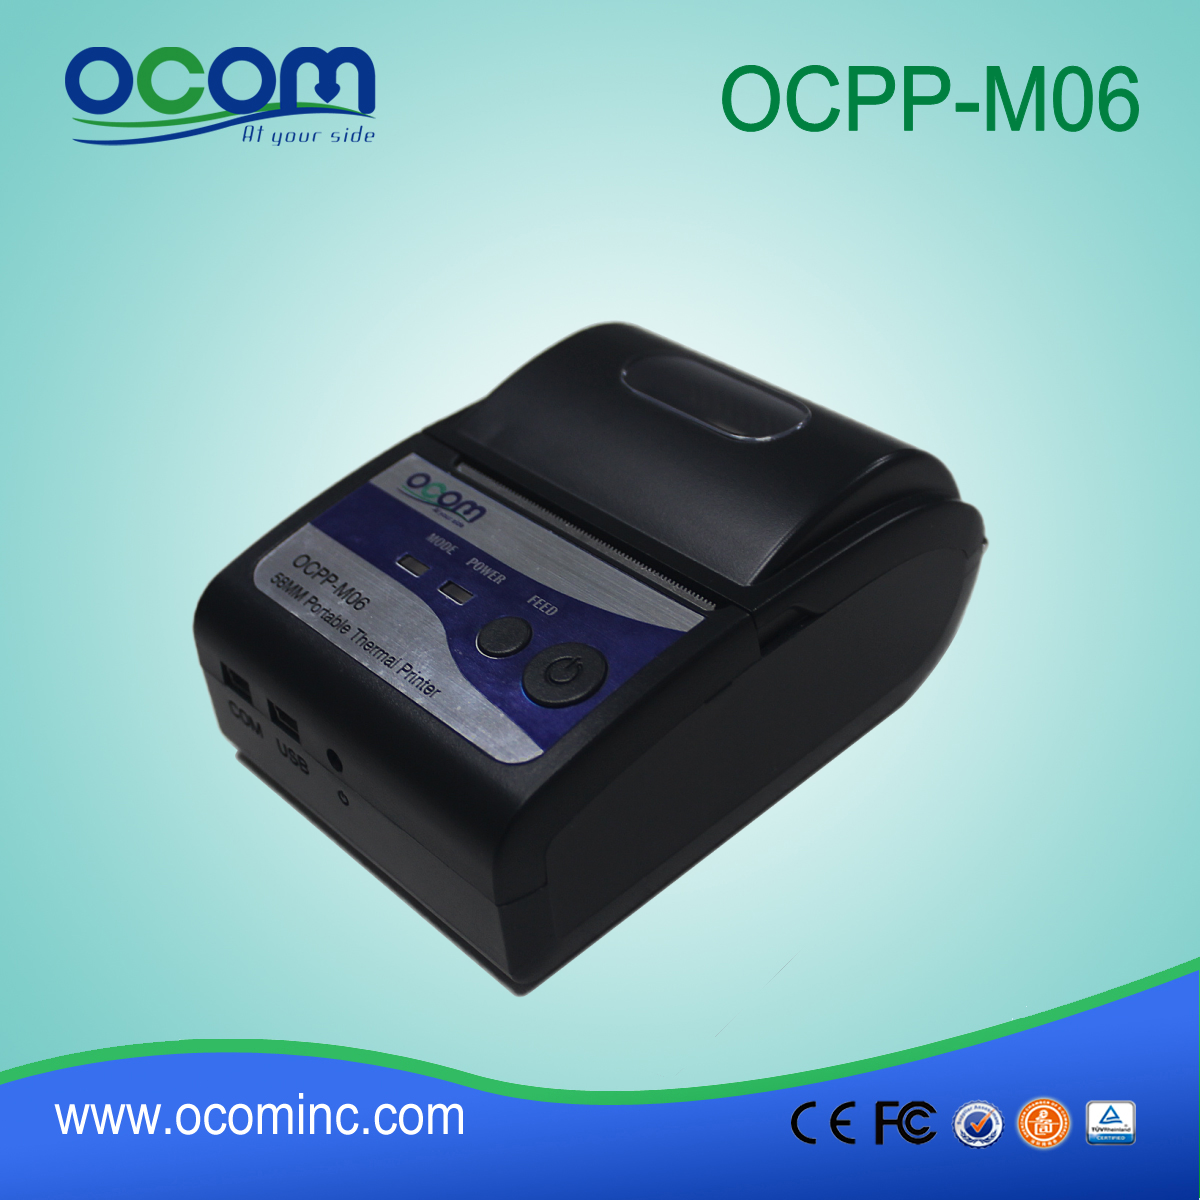 OCPP-M06: OCOM Gorący sprzedaje tanie 58mm drukarkę bluetooth, 58mm bluetooth drukarki